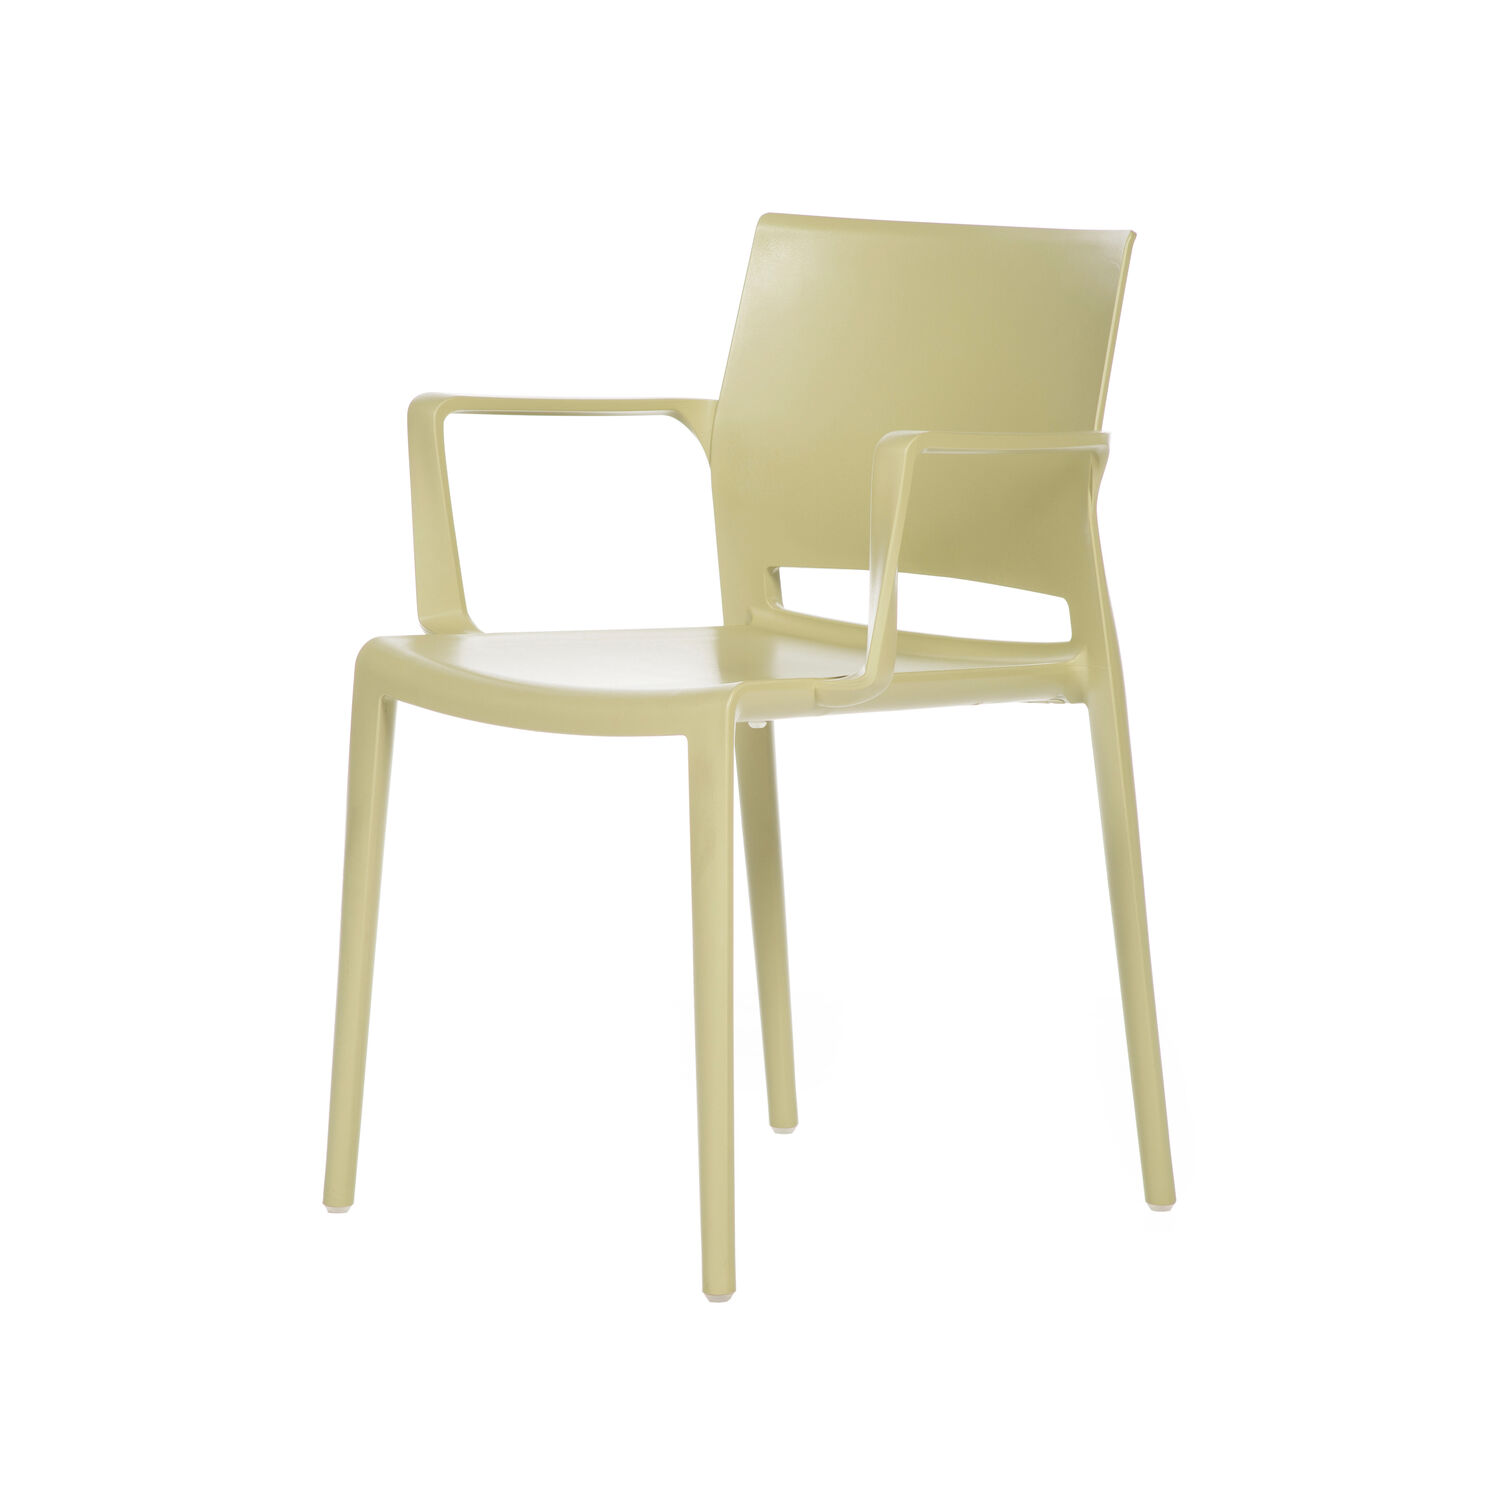 Hita Chair Arms (2)